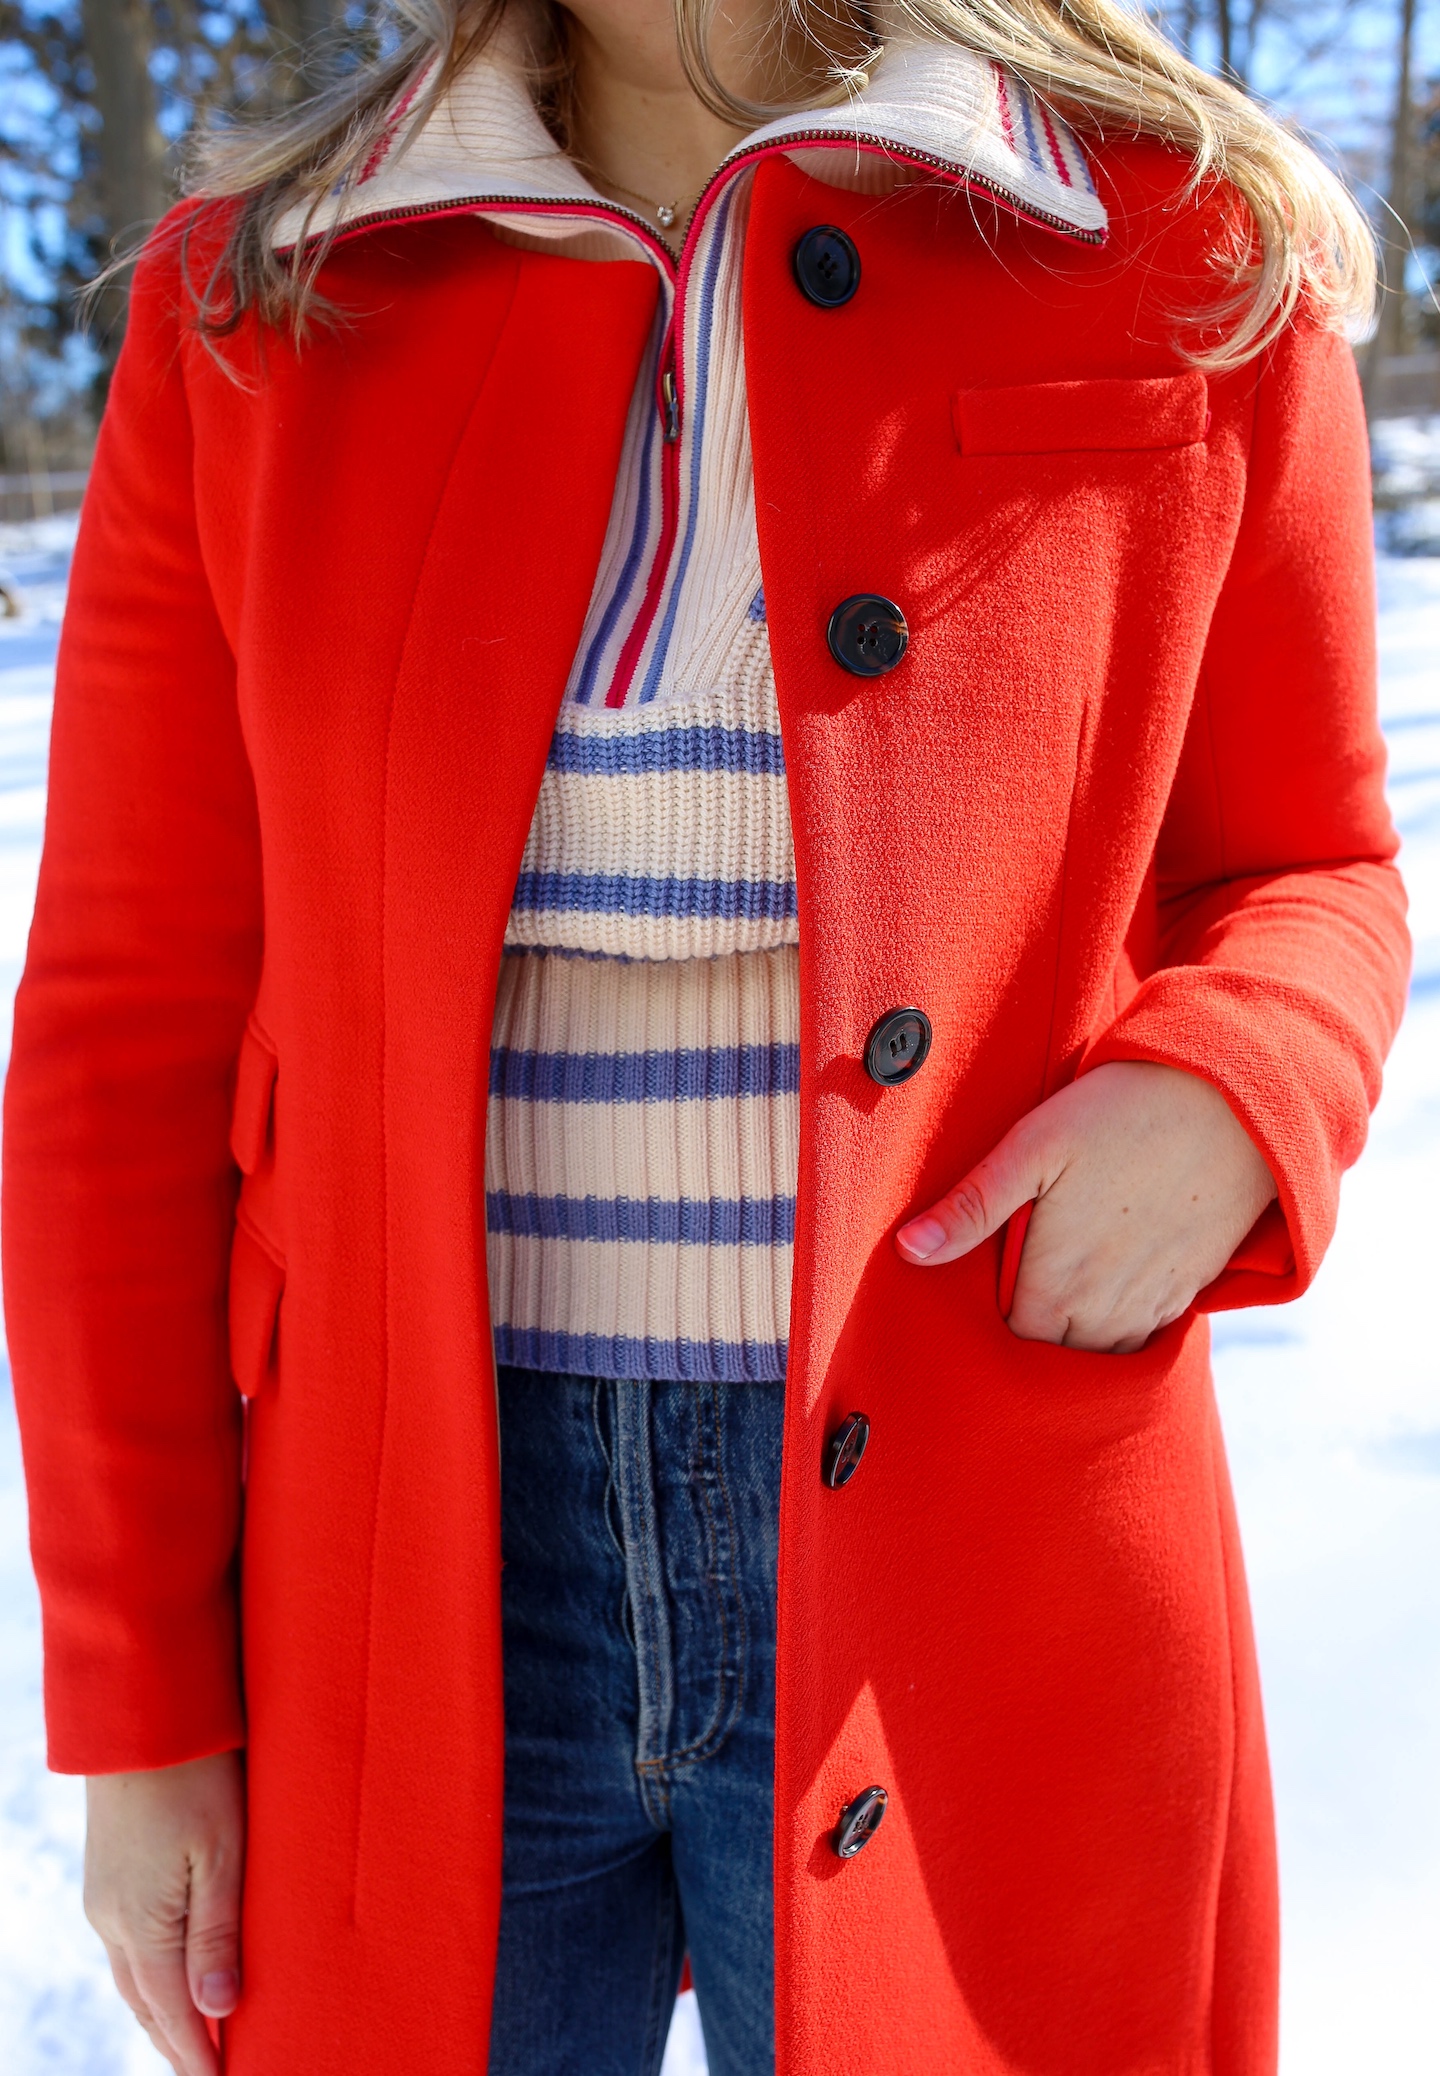 jcrew-red-coat-stripe-sweater.